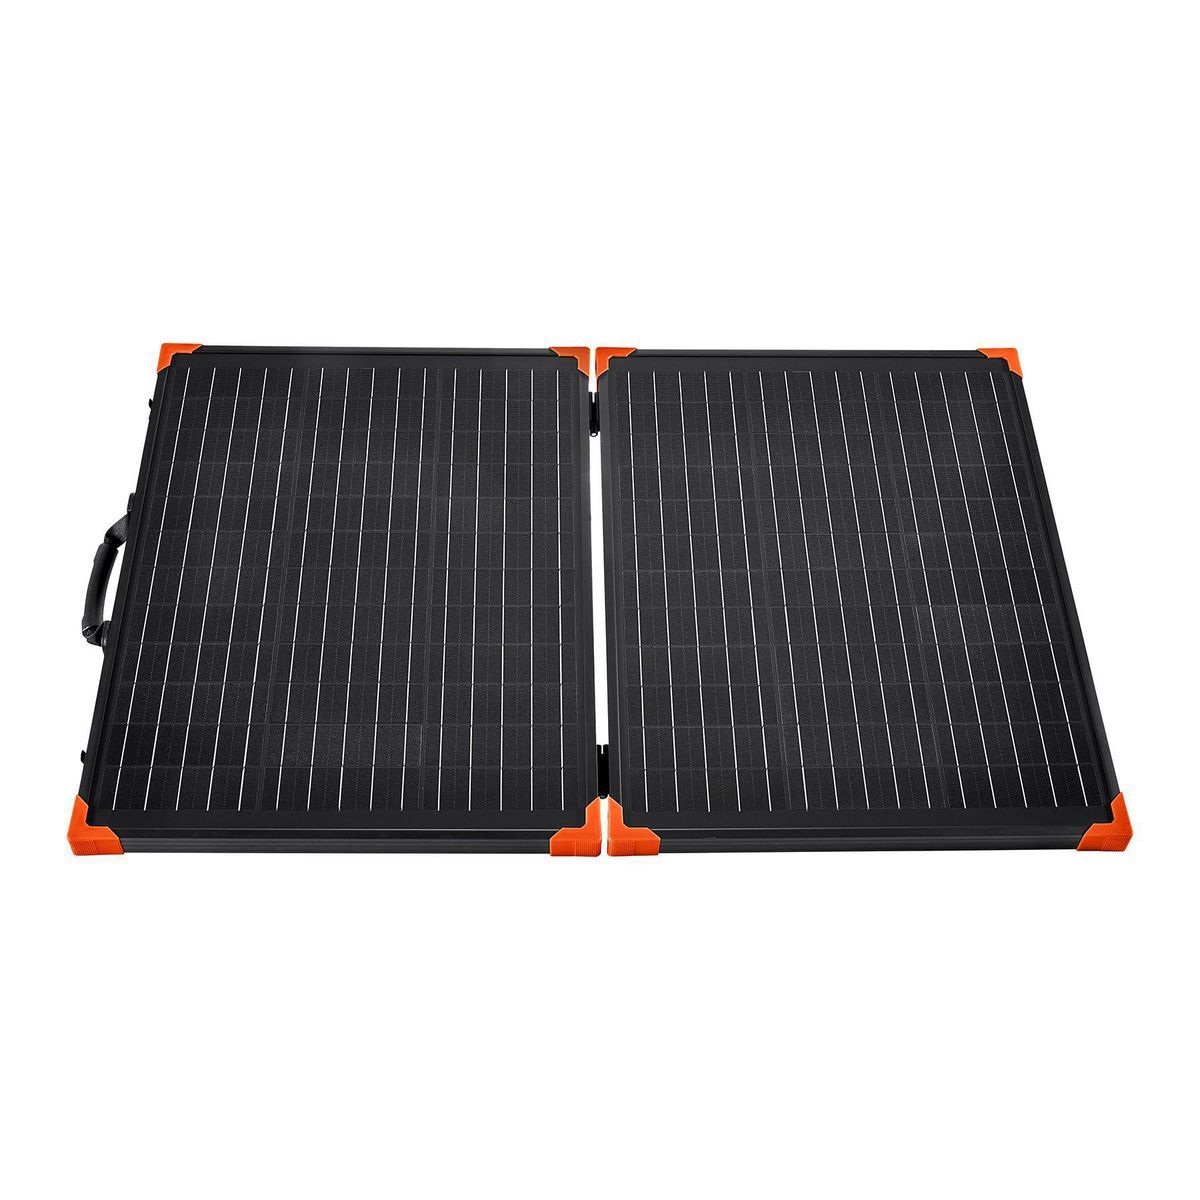 THUNDERBOLT SOLAR 100 Watt Solar Panel Briefcase